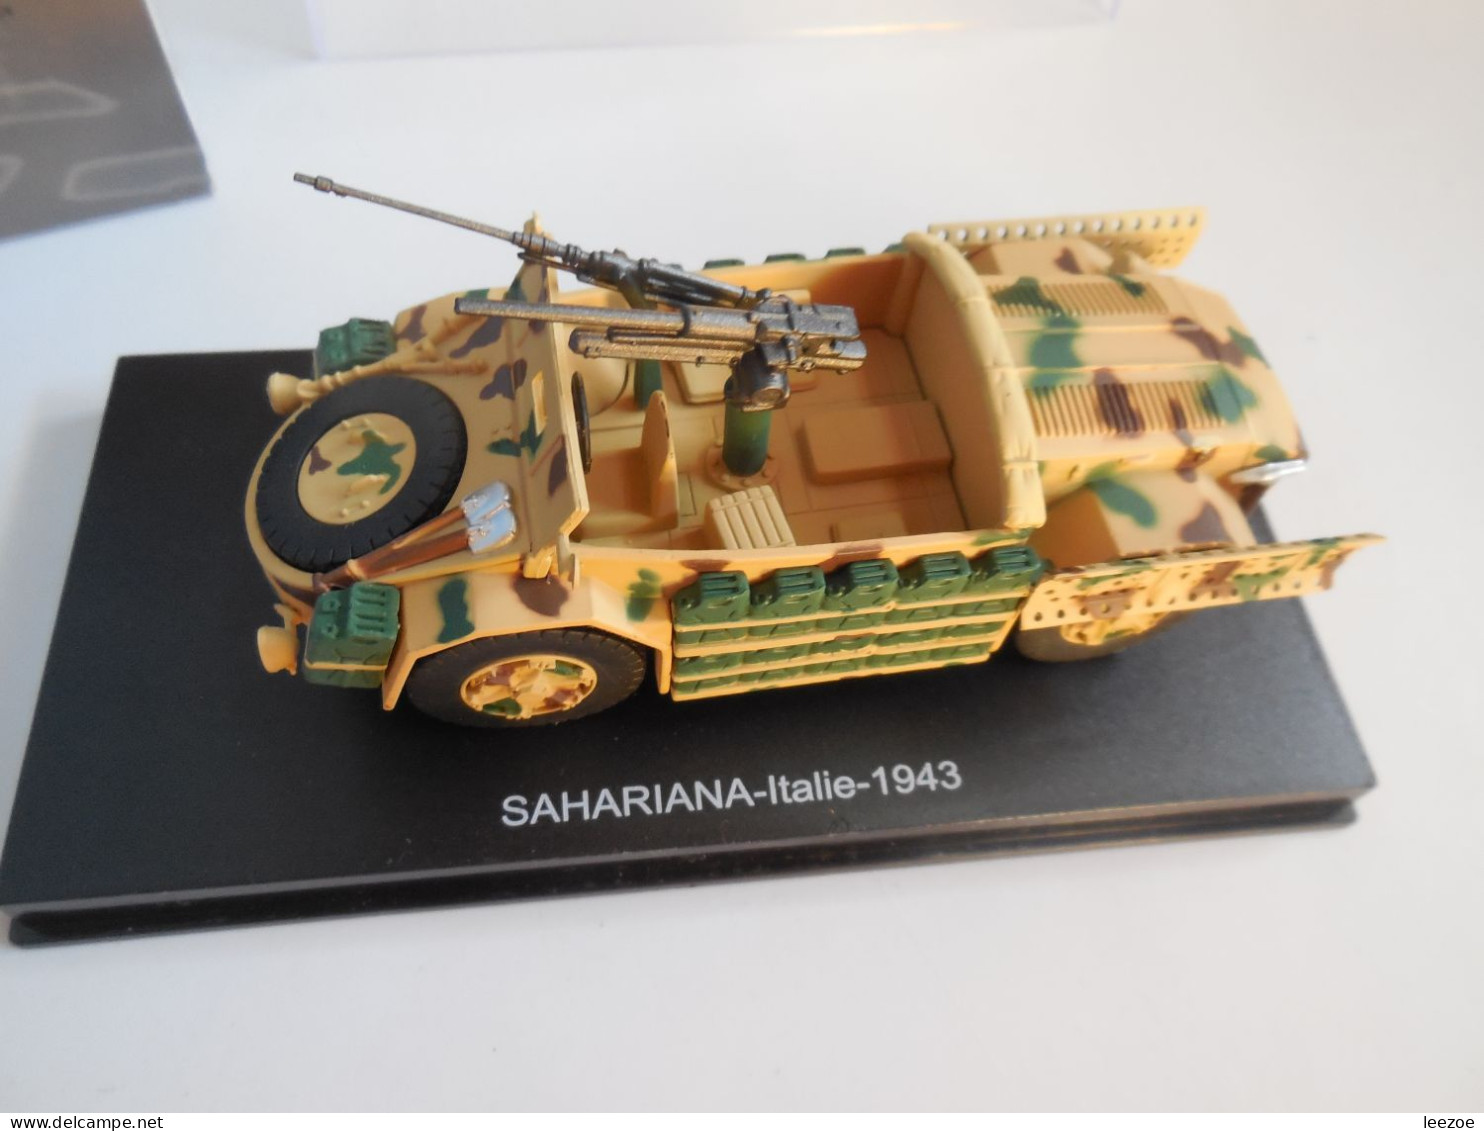 ATLAS Véhicules et blindés HUMBER ARMOURED CAR MK IV et SAHARIANA série limitée 645/2000